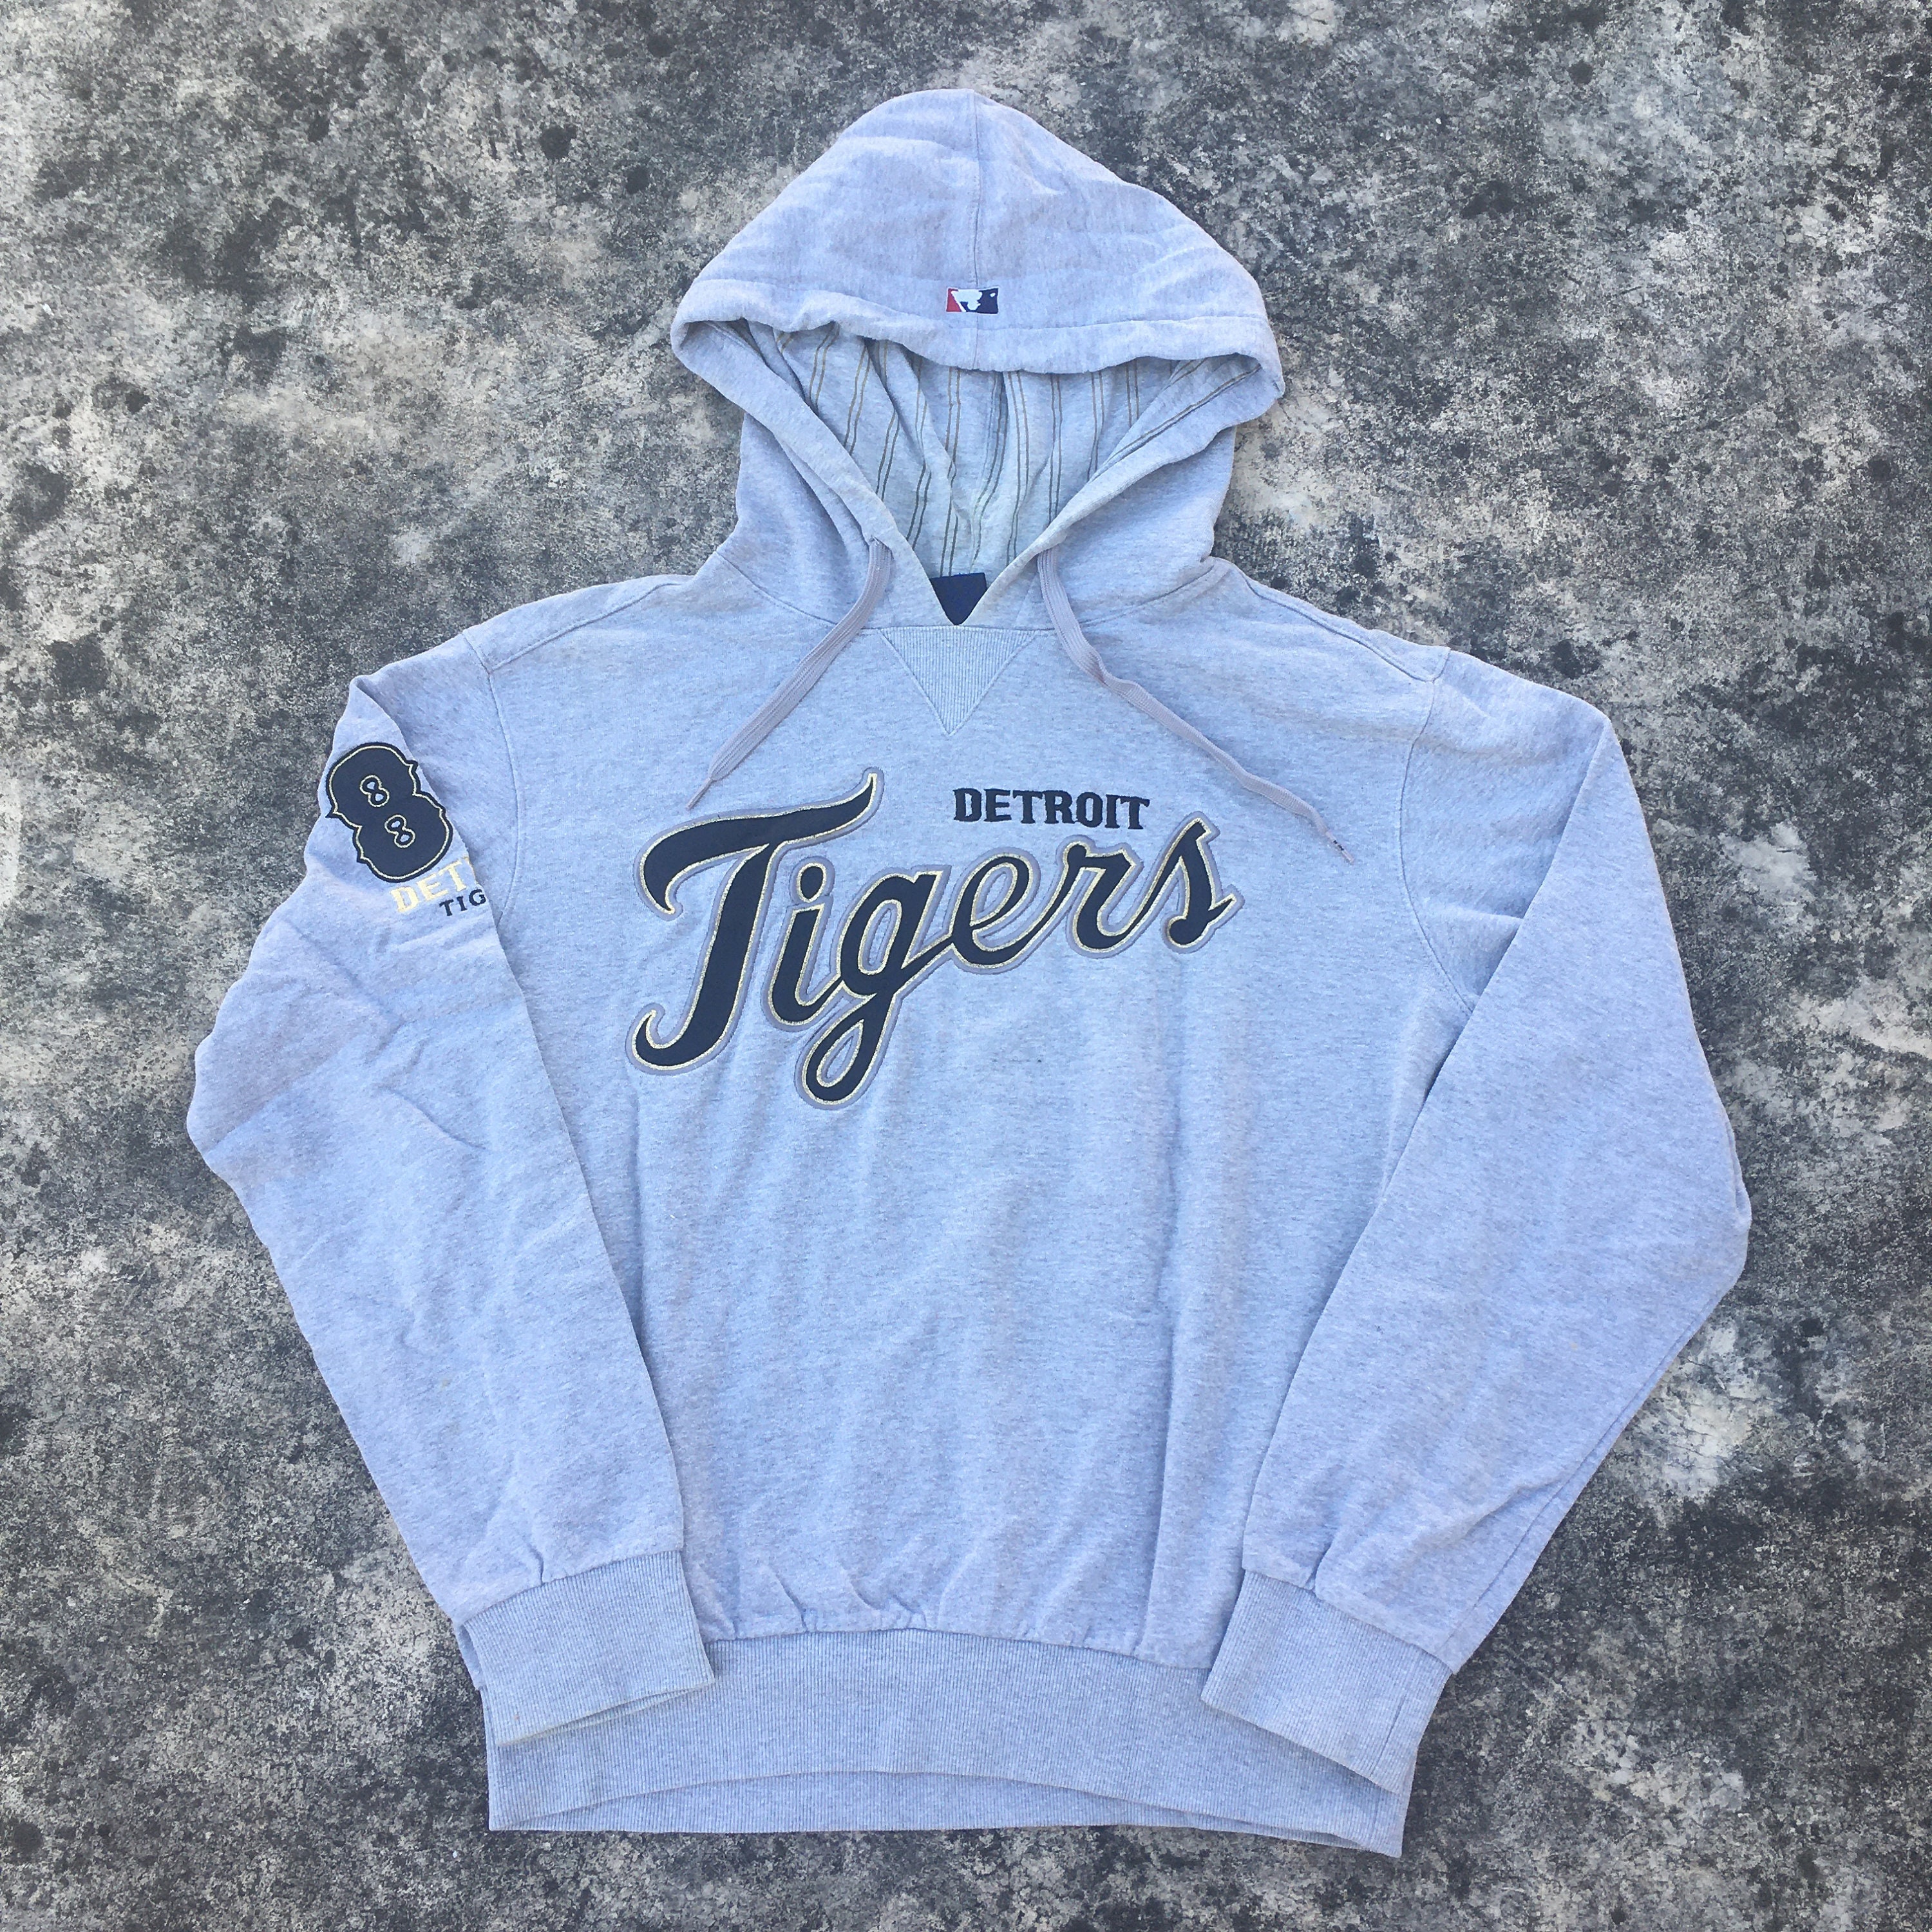 Vintage Detroit Tigers Hoodie / Grey Pullover MLB Vintage 90s Sports